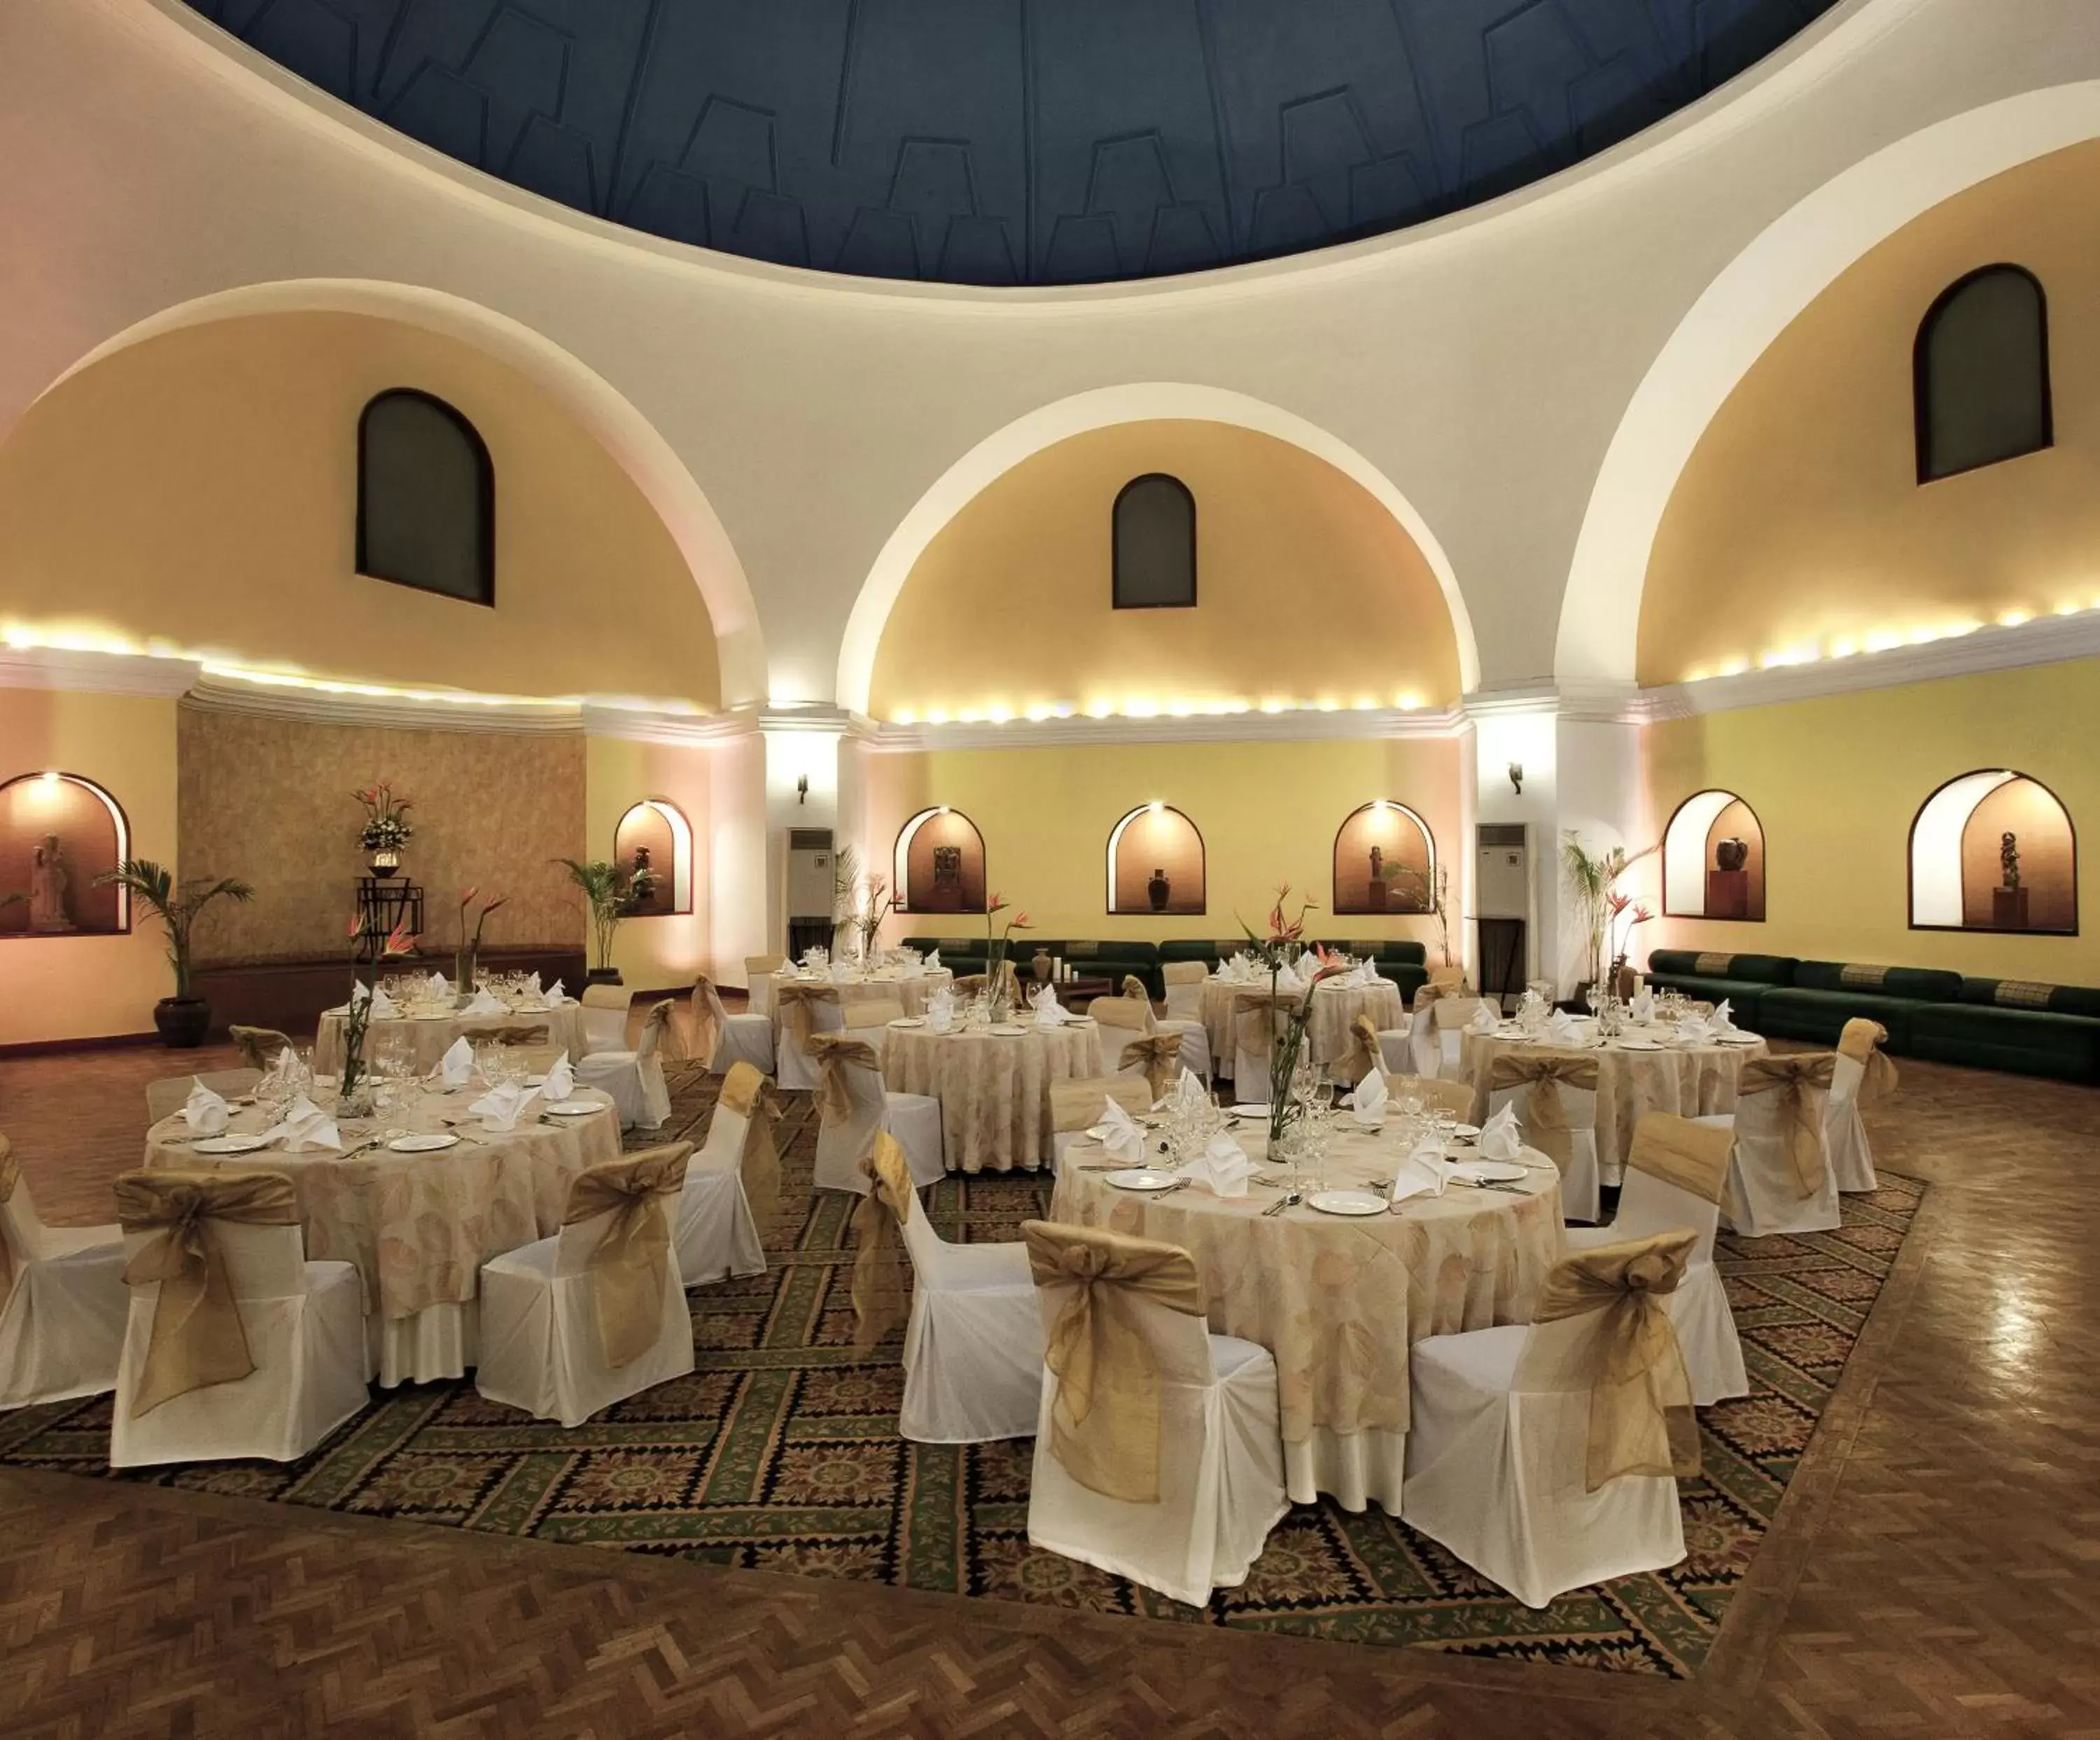 Banquet/Function facilities, Banquet Facilities in Ambassador, New Delhi - IHCL SeleQtions